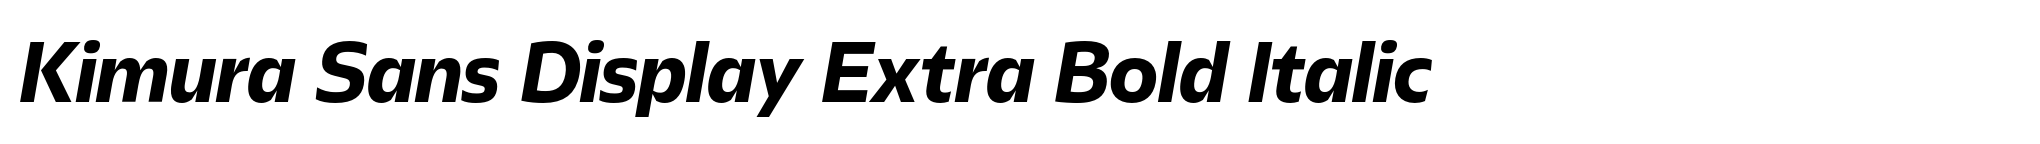 Kimura Sans Display Extra Bold Italic image